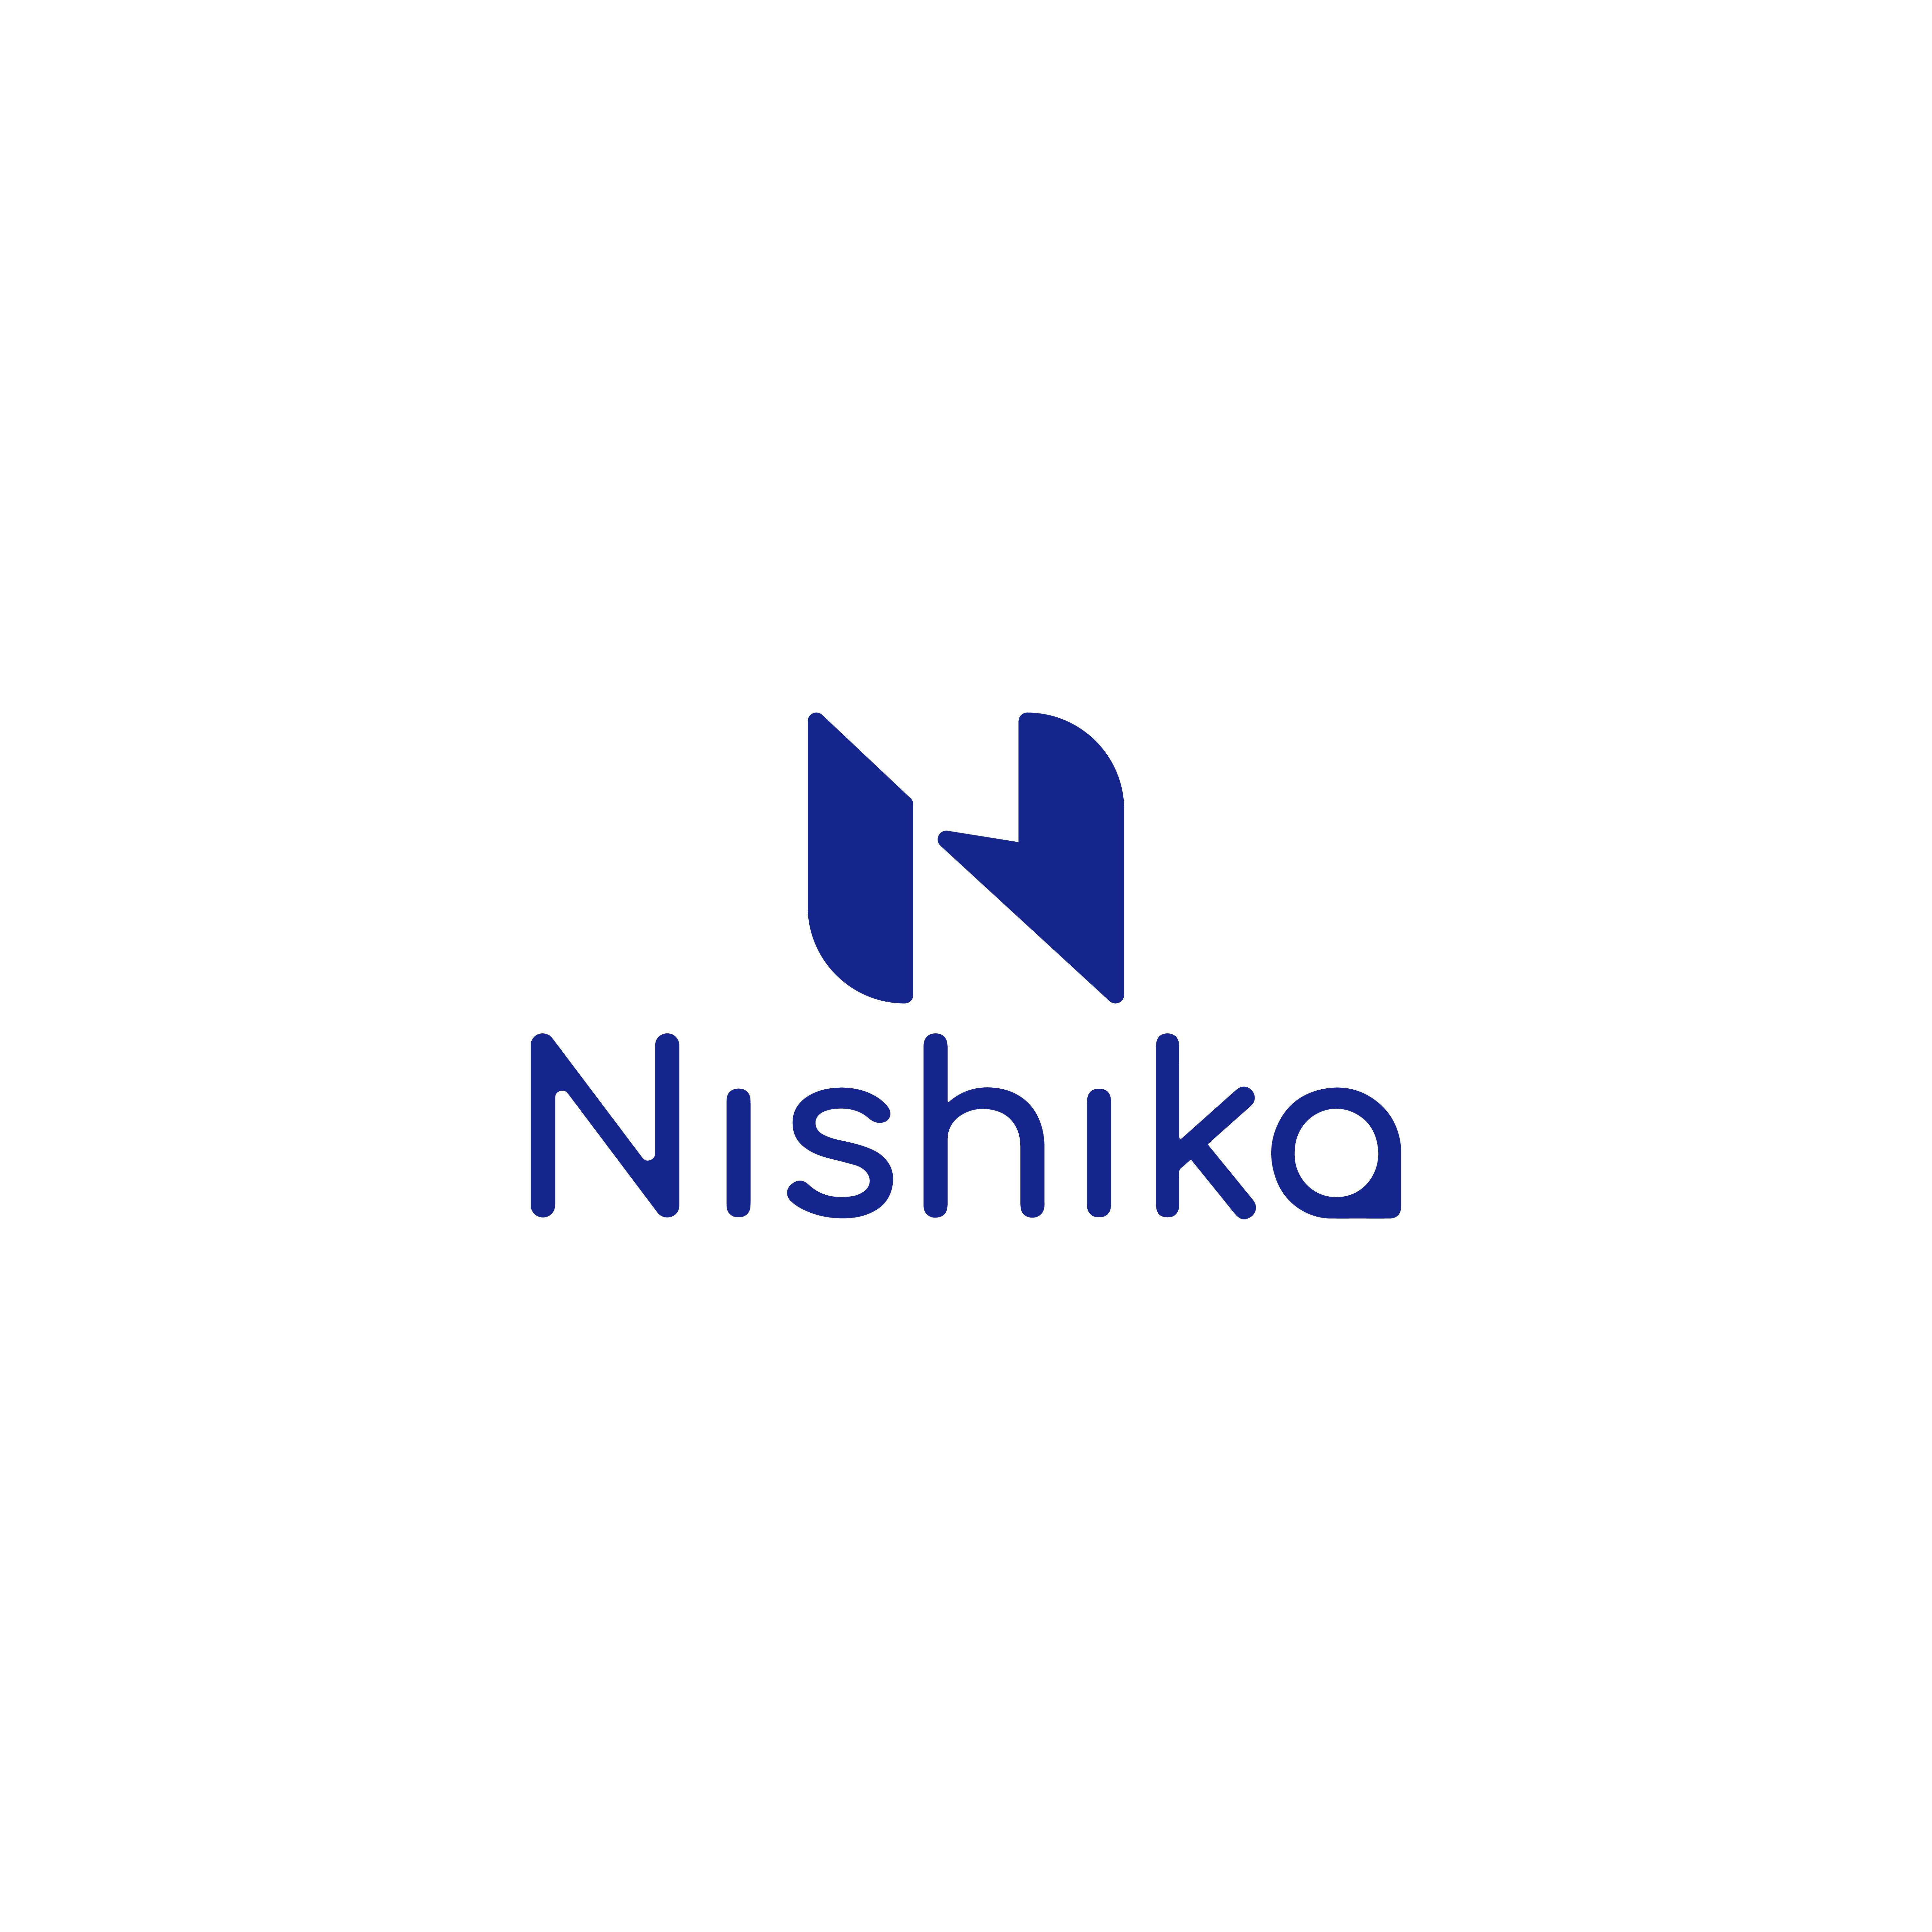 Nishika 株式会社